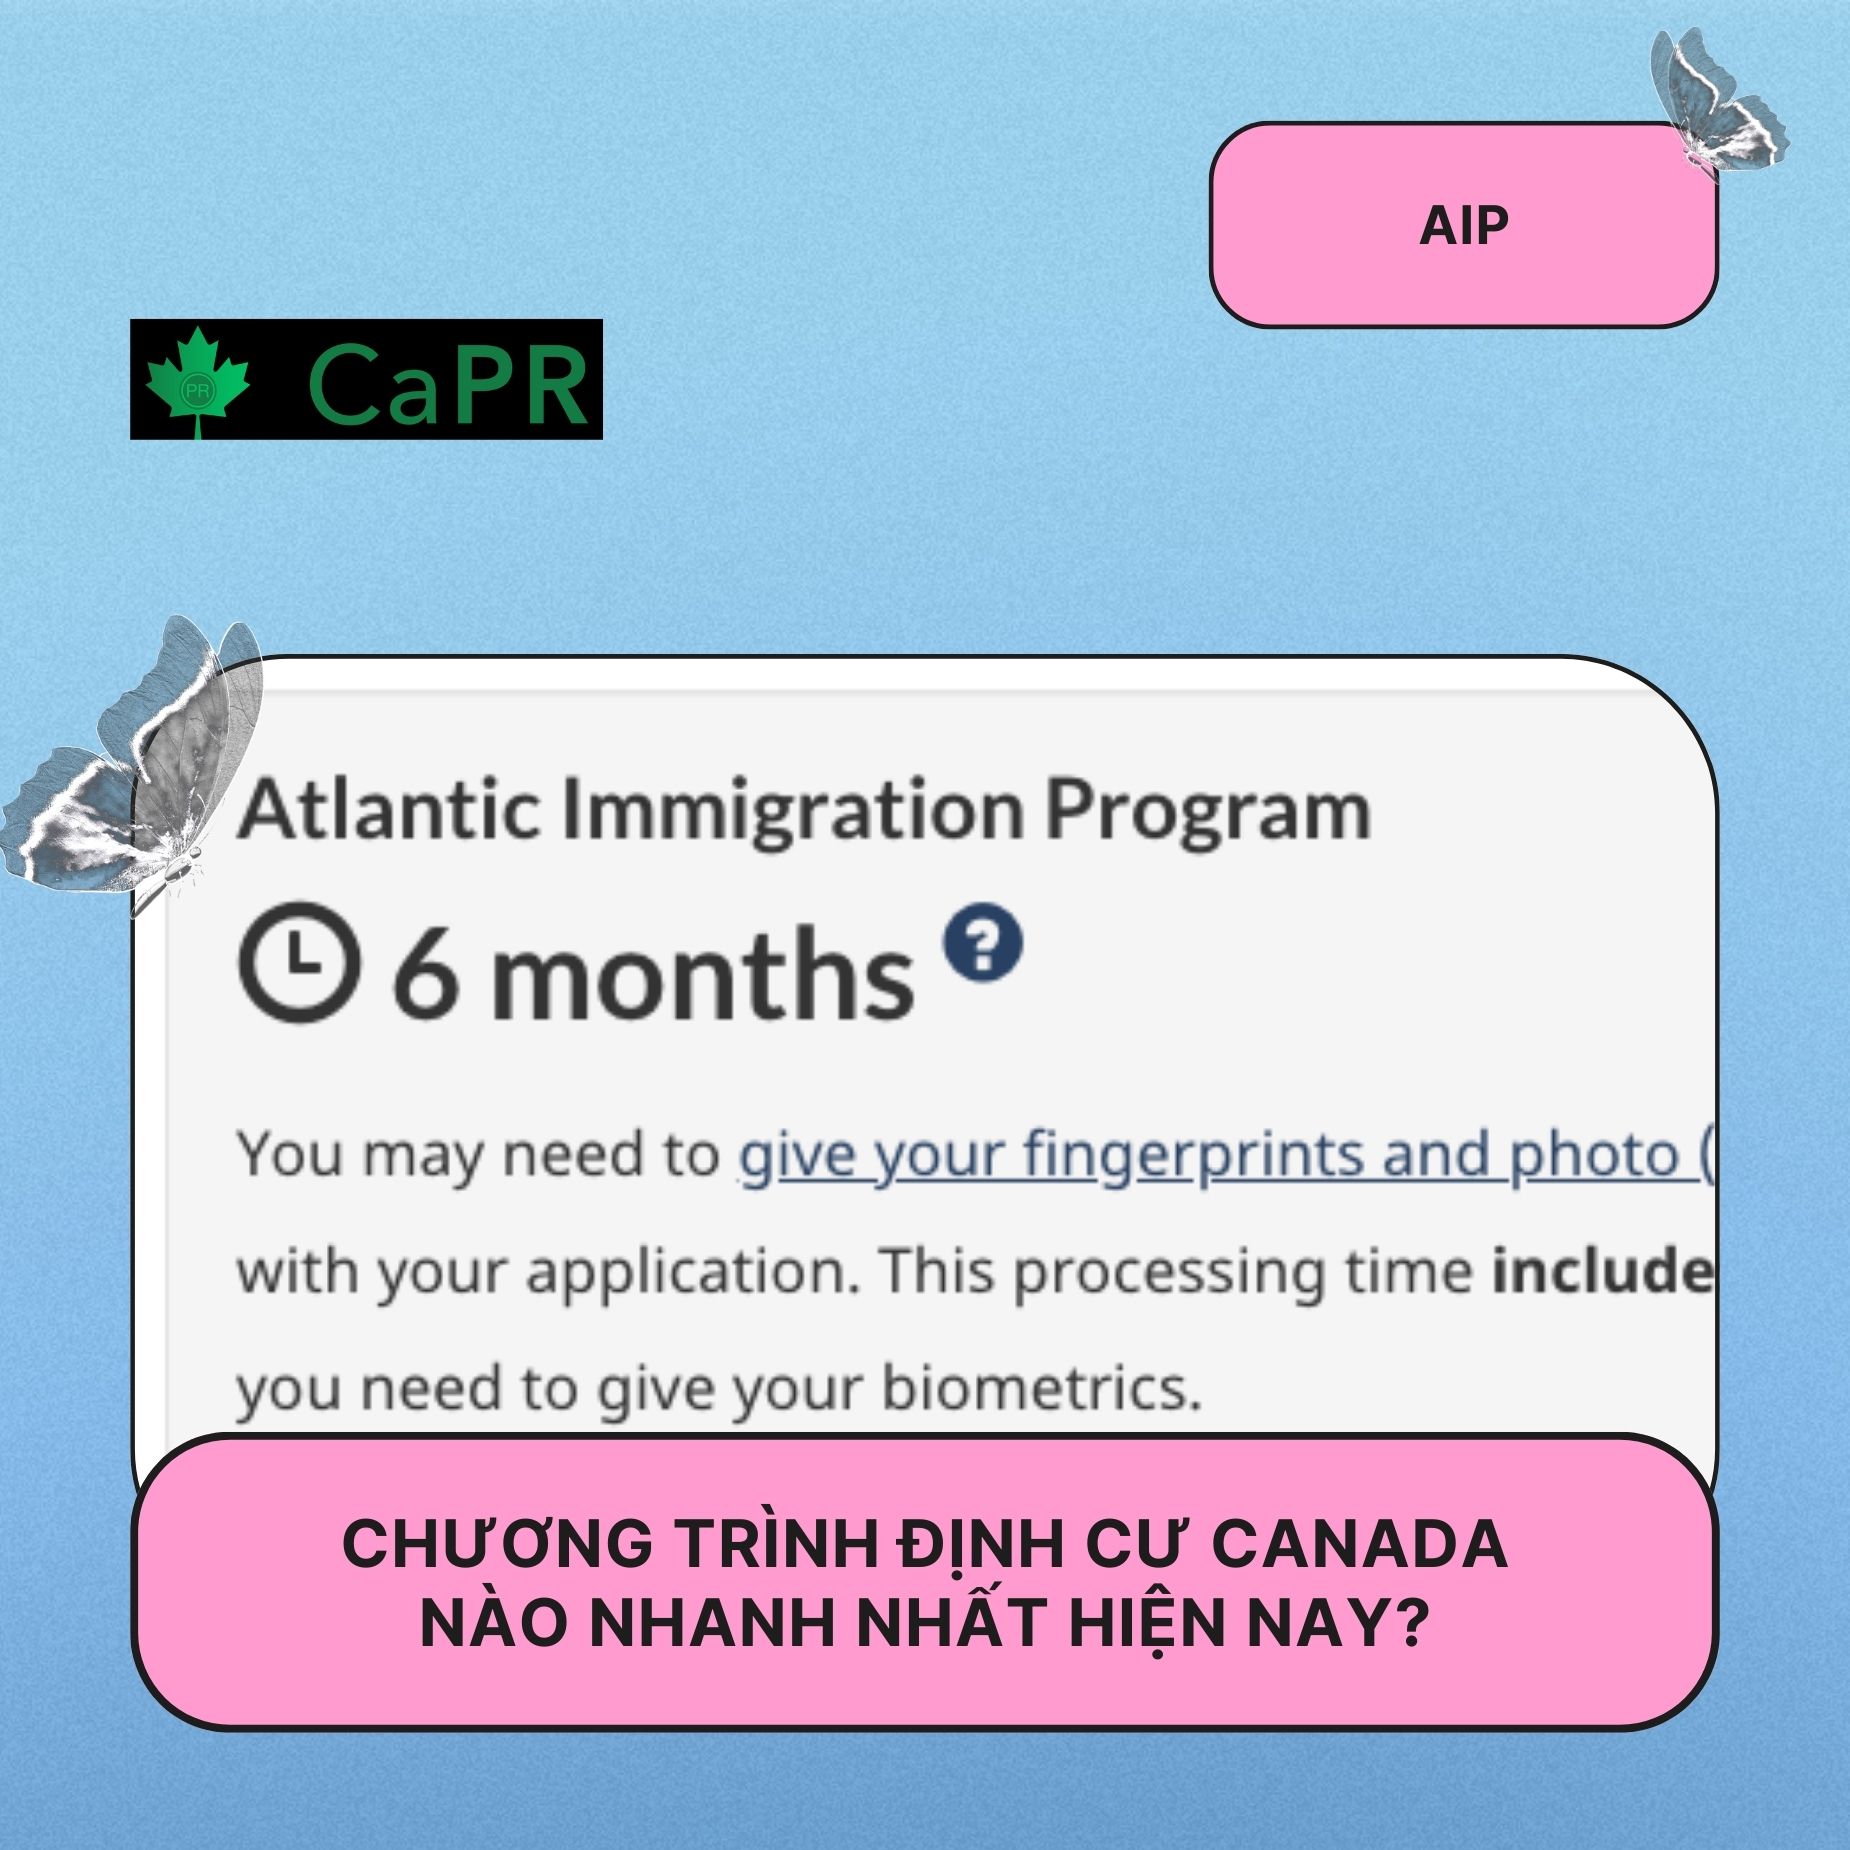 Chương trình định cư Canada nào nhanh nhất hiện nay?